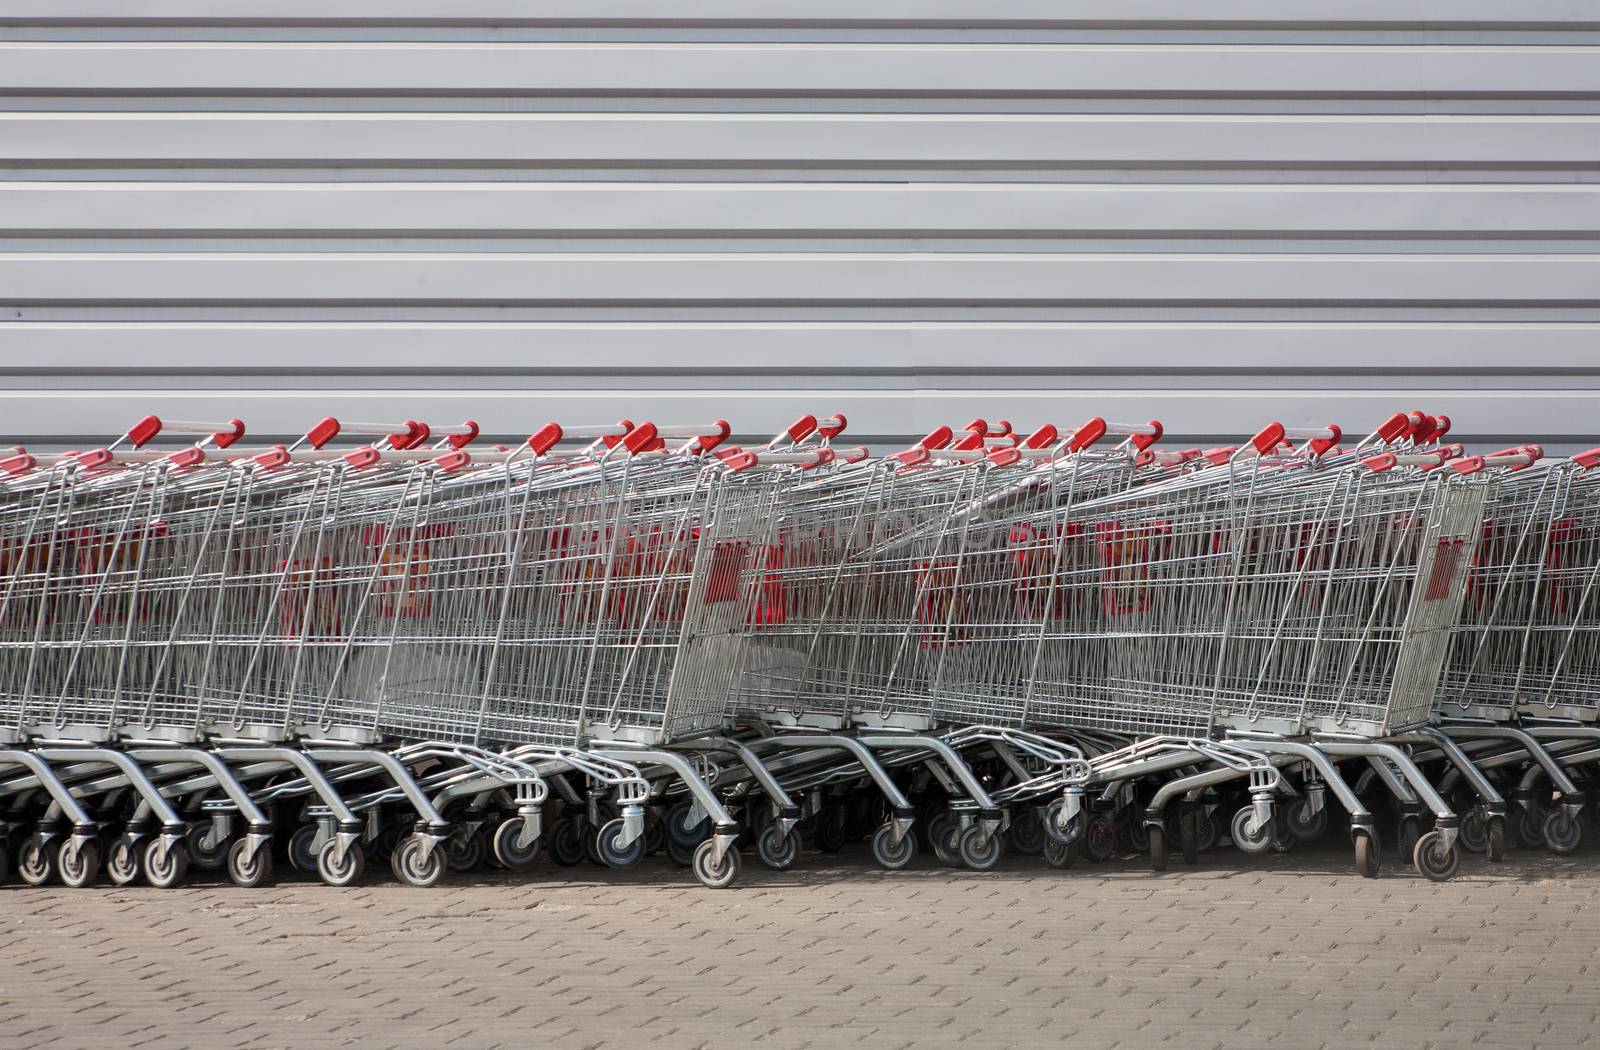 Carts at supermarket by yurii_bizgaimer